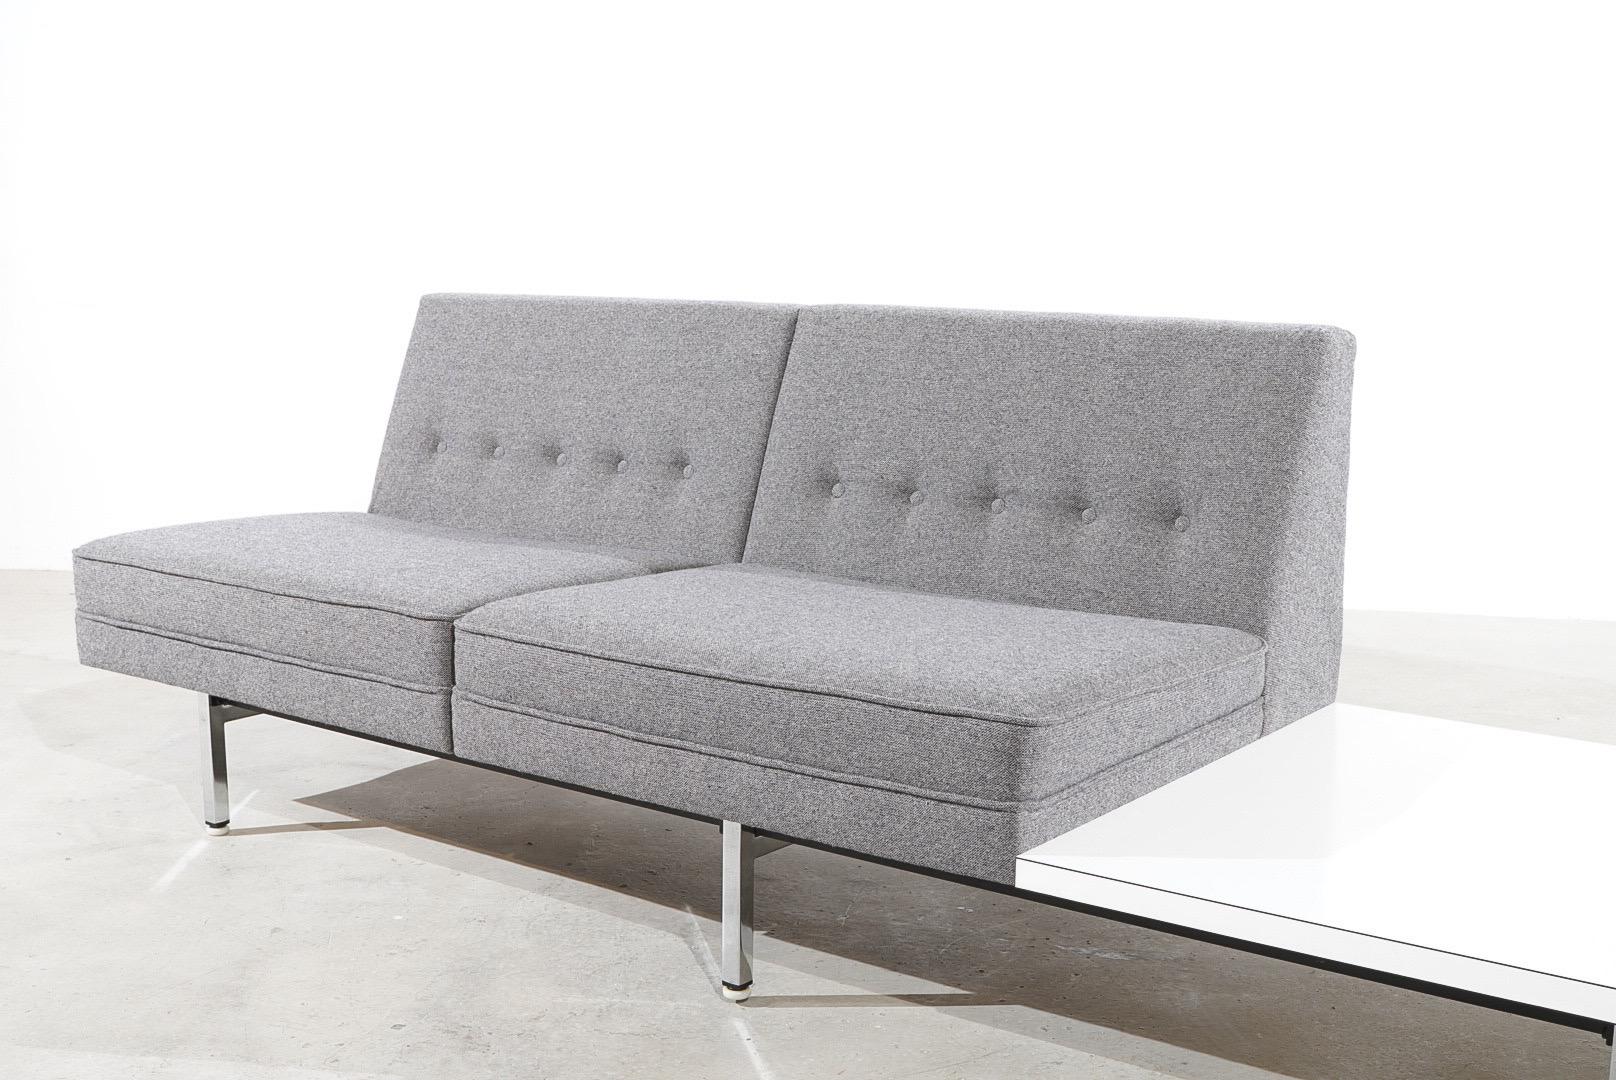 Modulares Sofa von George Nelson mit einer starken Metallstruktur und verchromten Füßen. Zwei grau gepolsterte Vintage-Sitze mit geknöpften Rückenlehnen und einer quadratischen Formica-Tischplatte. 

George Nelson (1908 - 1986). Als er in den 1930er